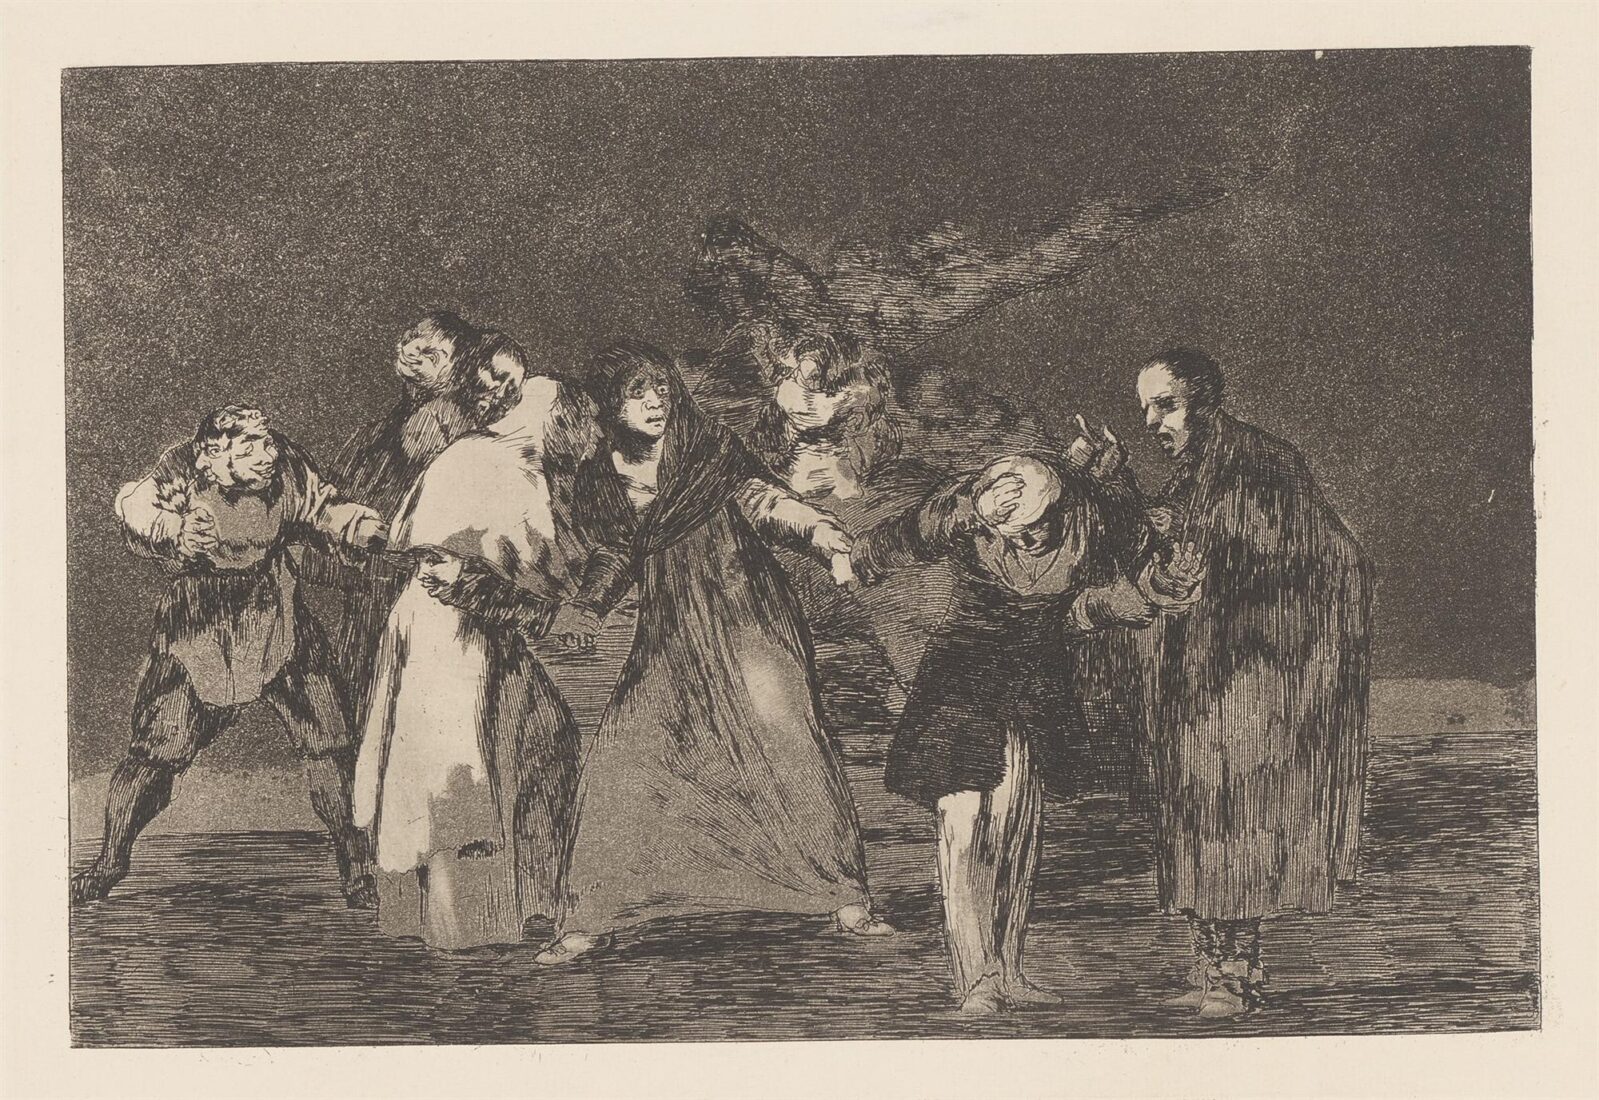 Τριπλή τρέλα ή Οι παραινέσεις [Η πληγή της μαχαιριάς βρίσκει γιατρειά, της γλώσσας όχι] - Goya y Lucientes Francisco